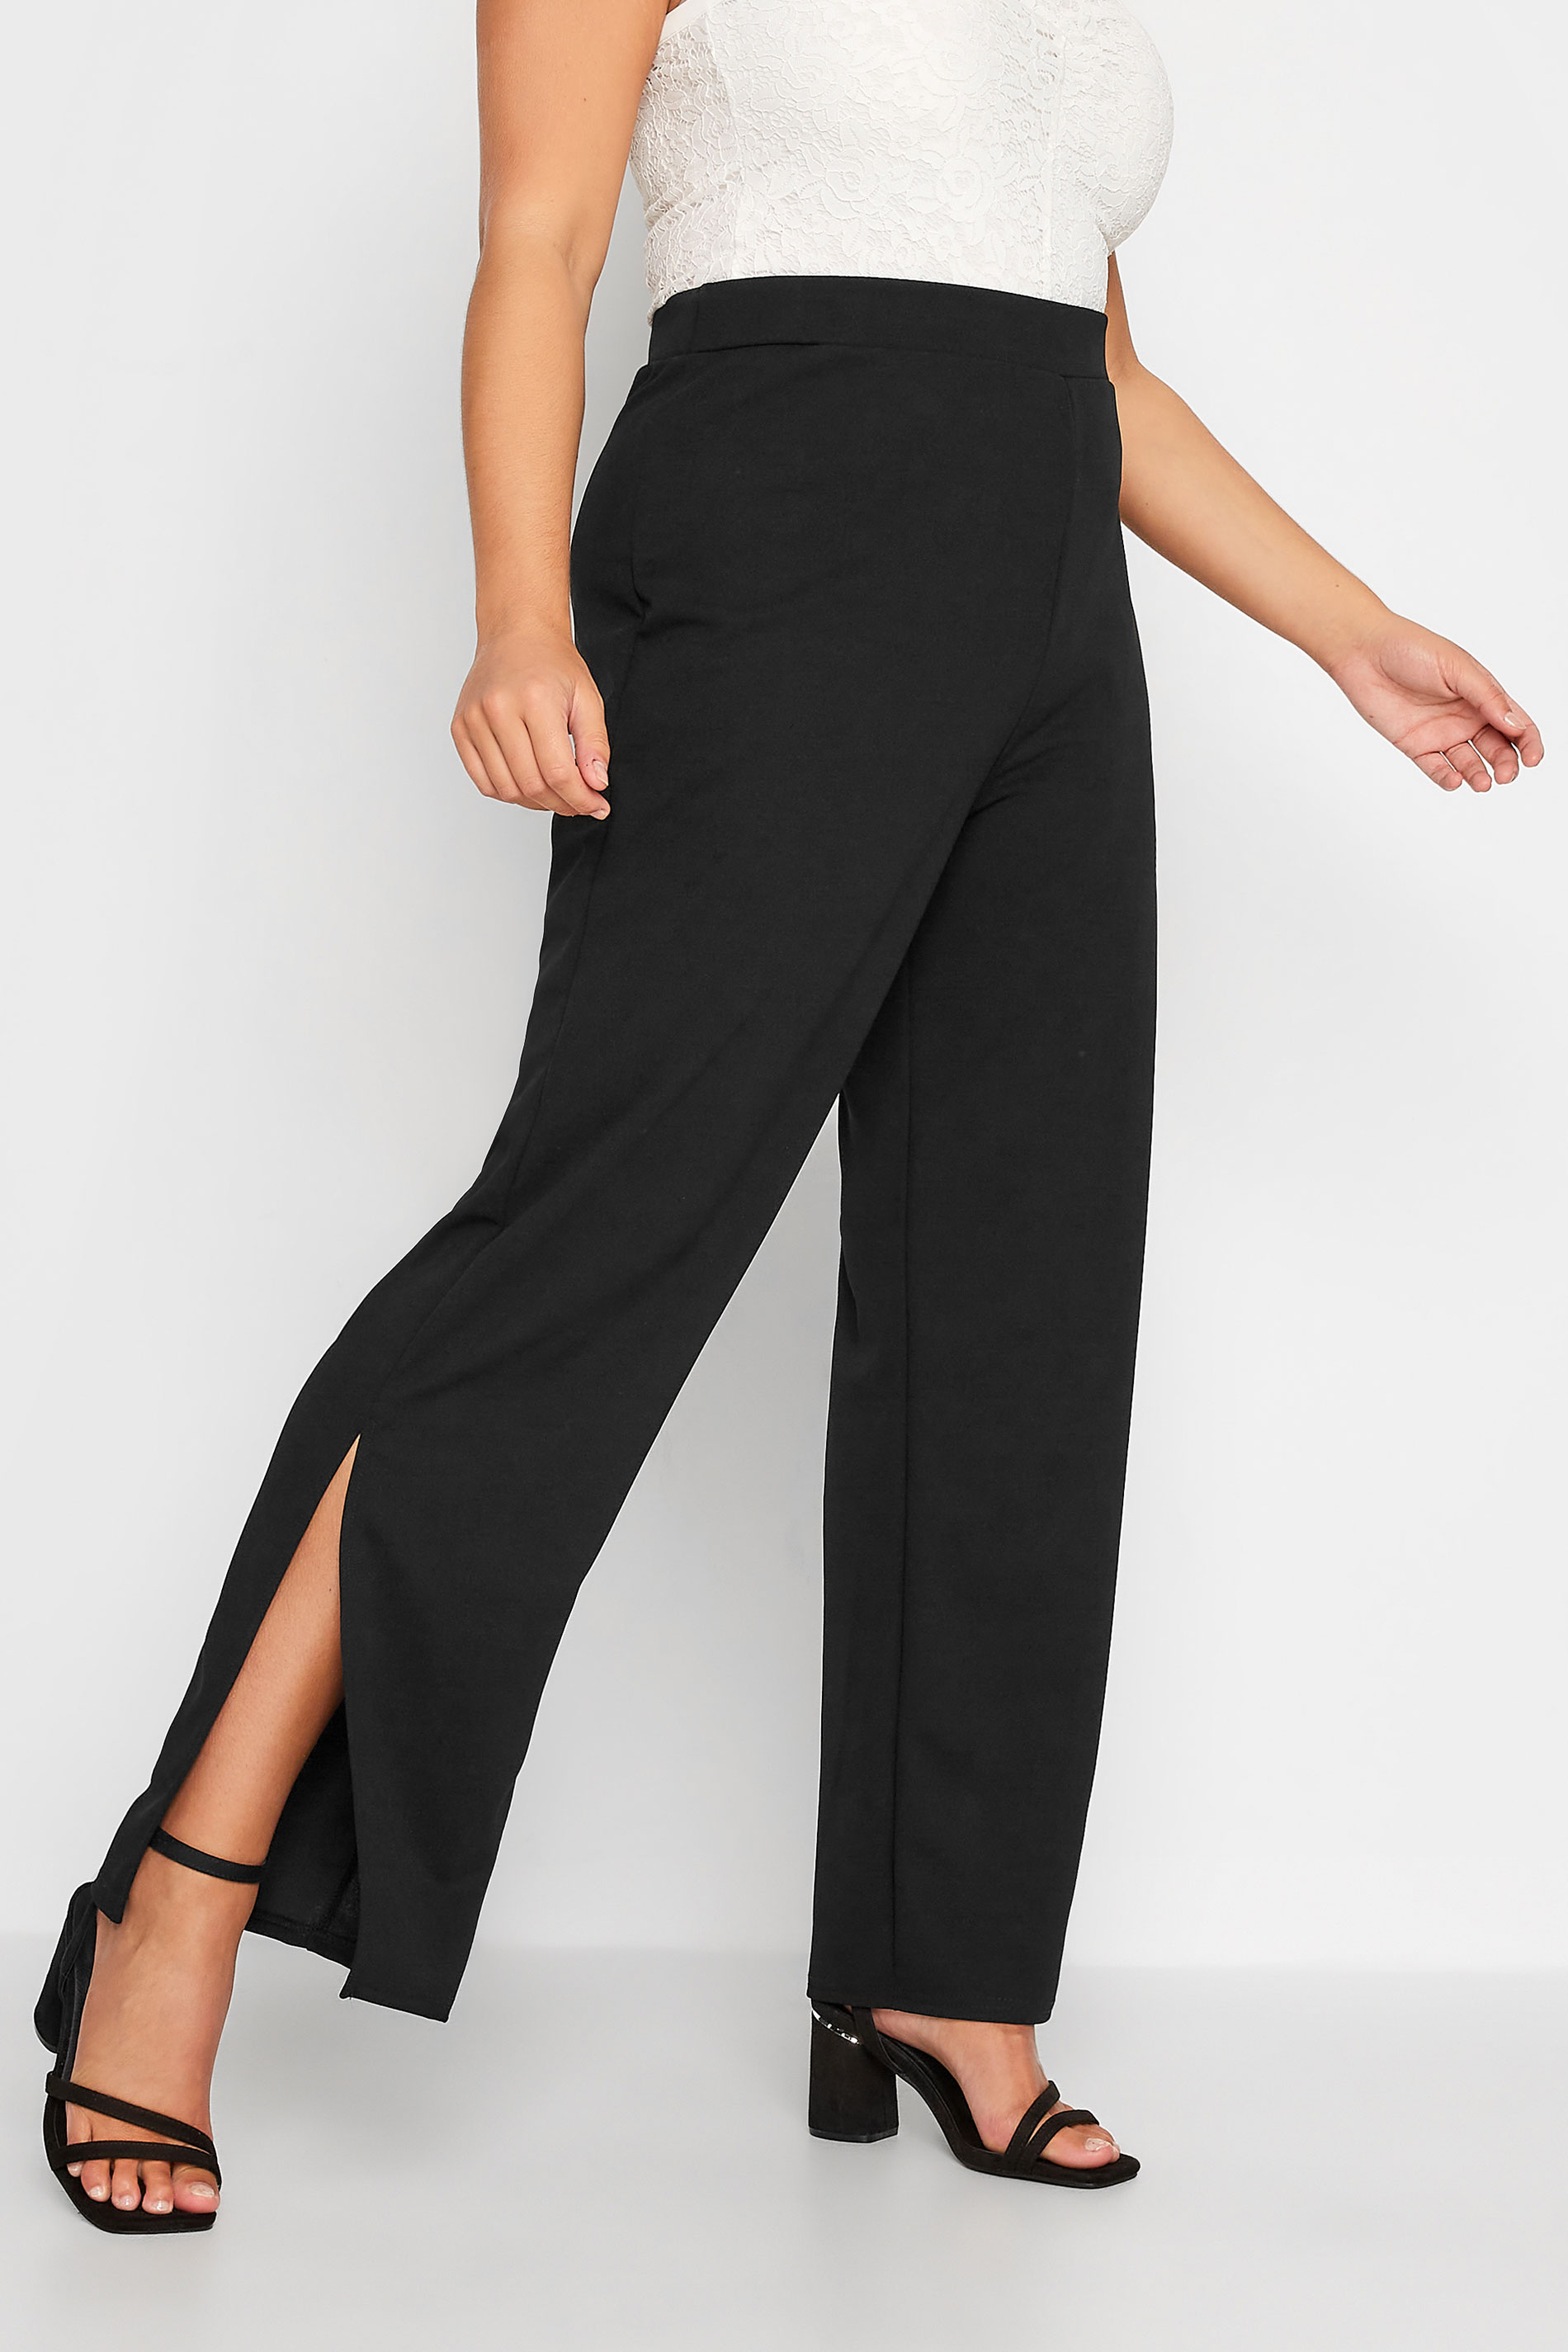 Plus Size Black Scuba Side Split Trousers | Yours Clothing 1